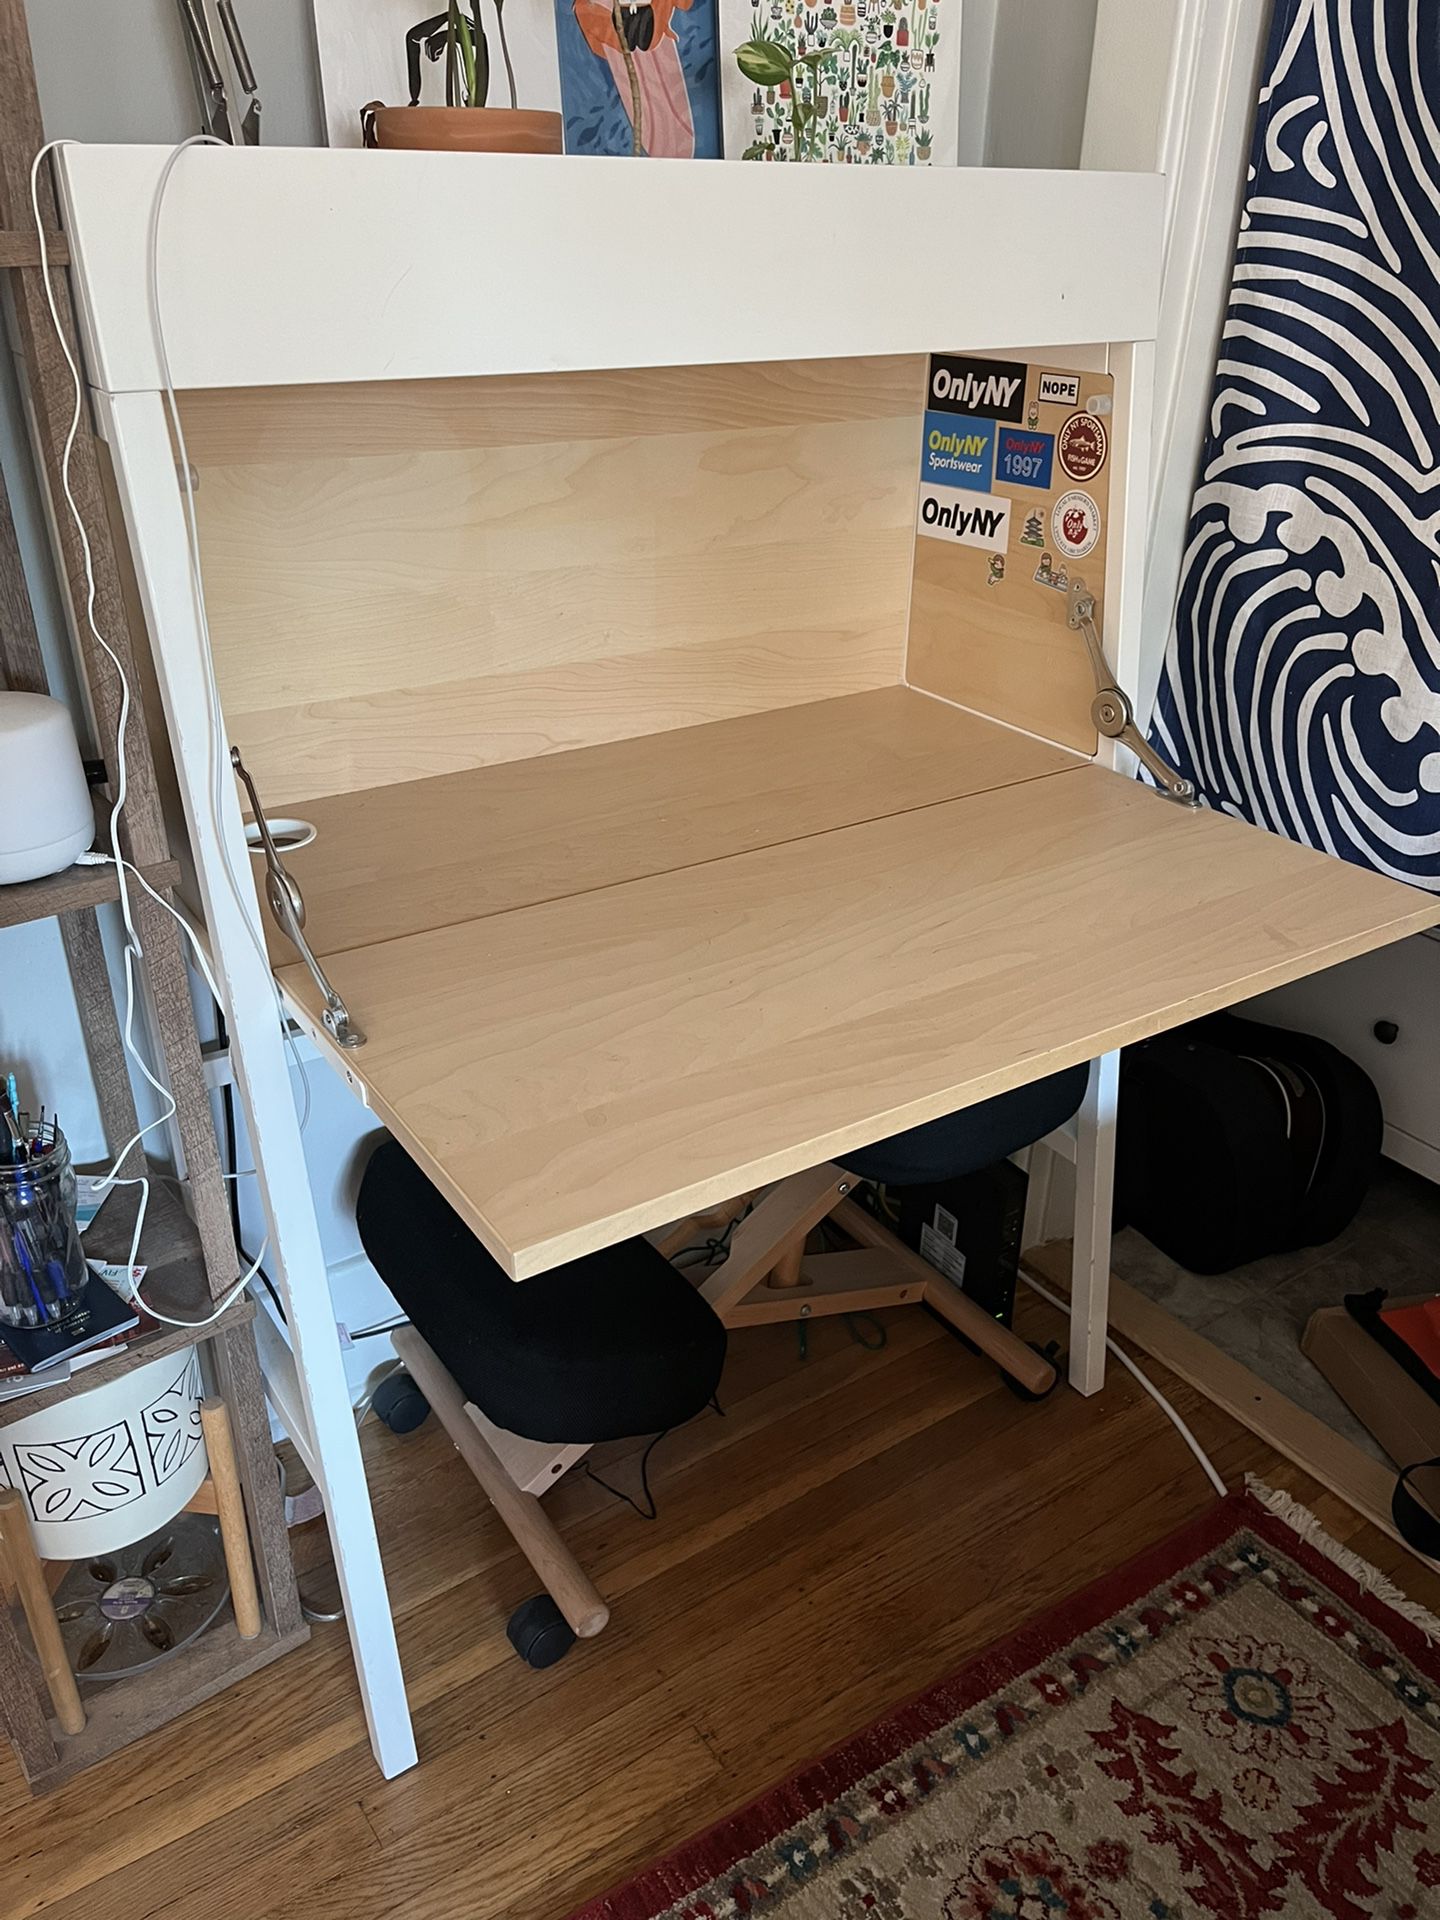 IKEA Bureau/secretary Desk